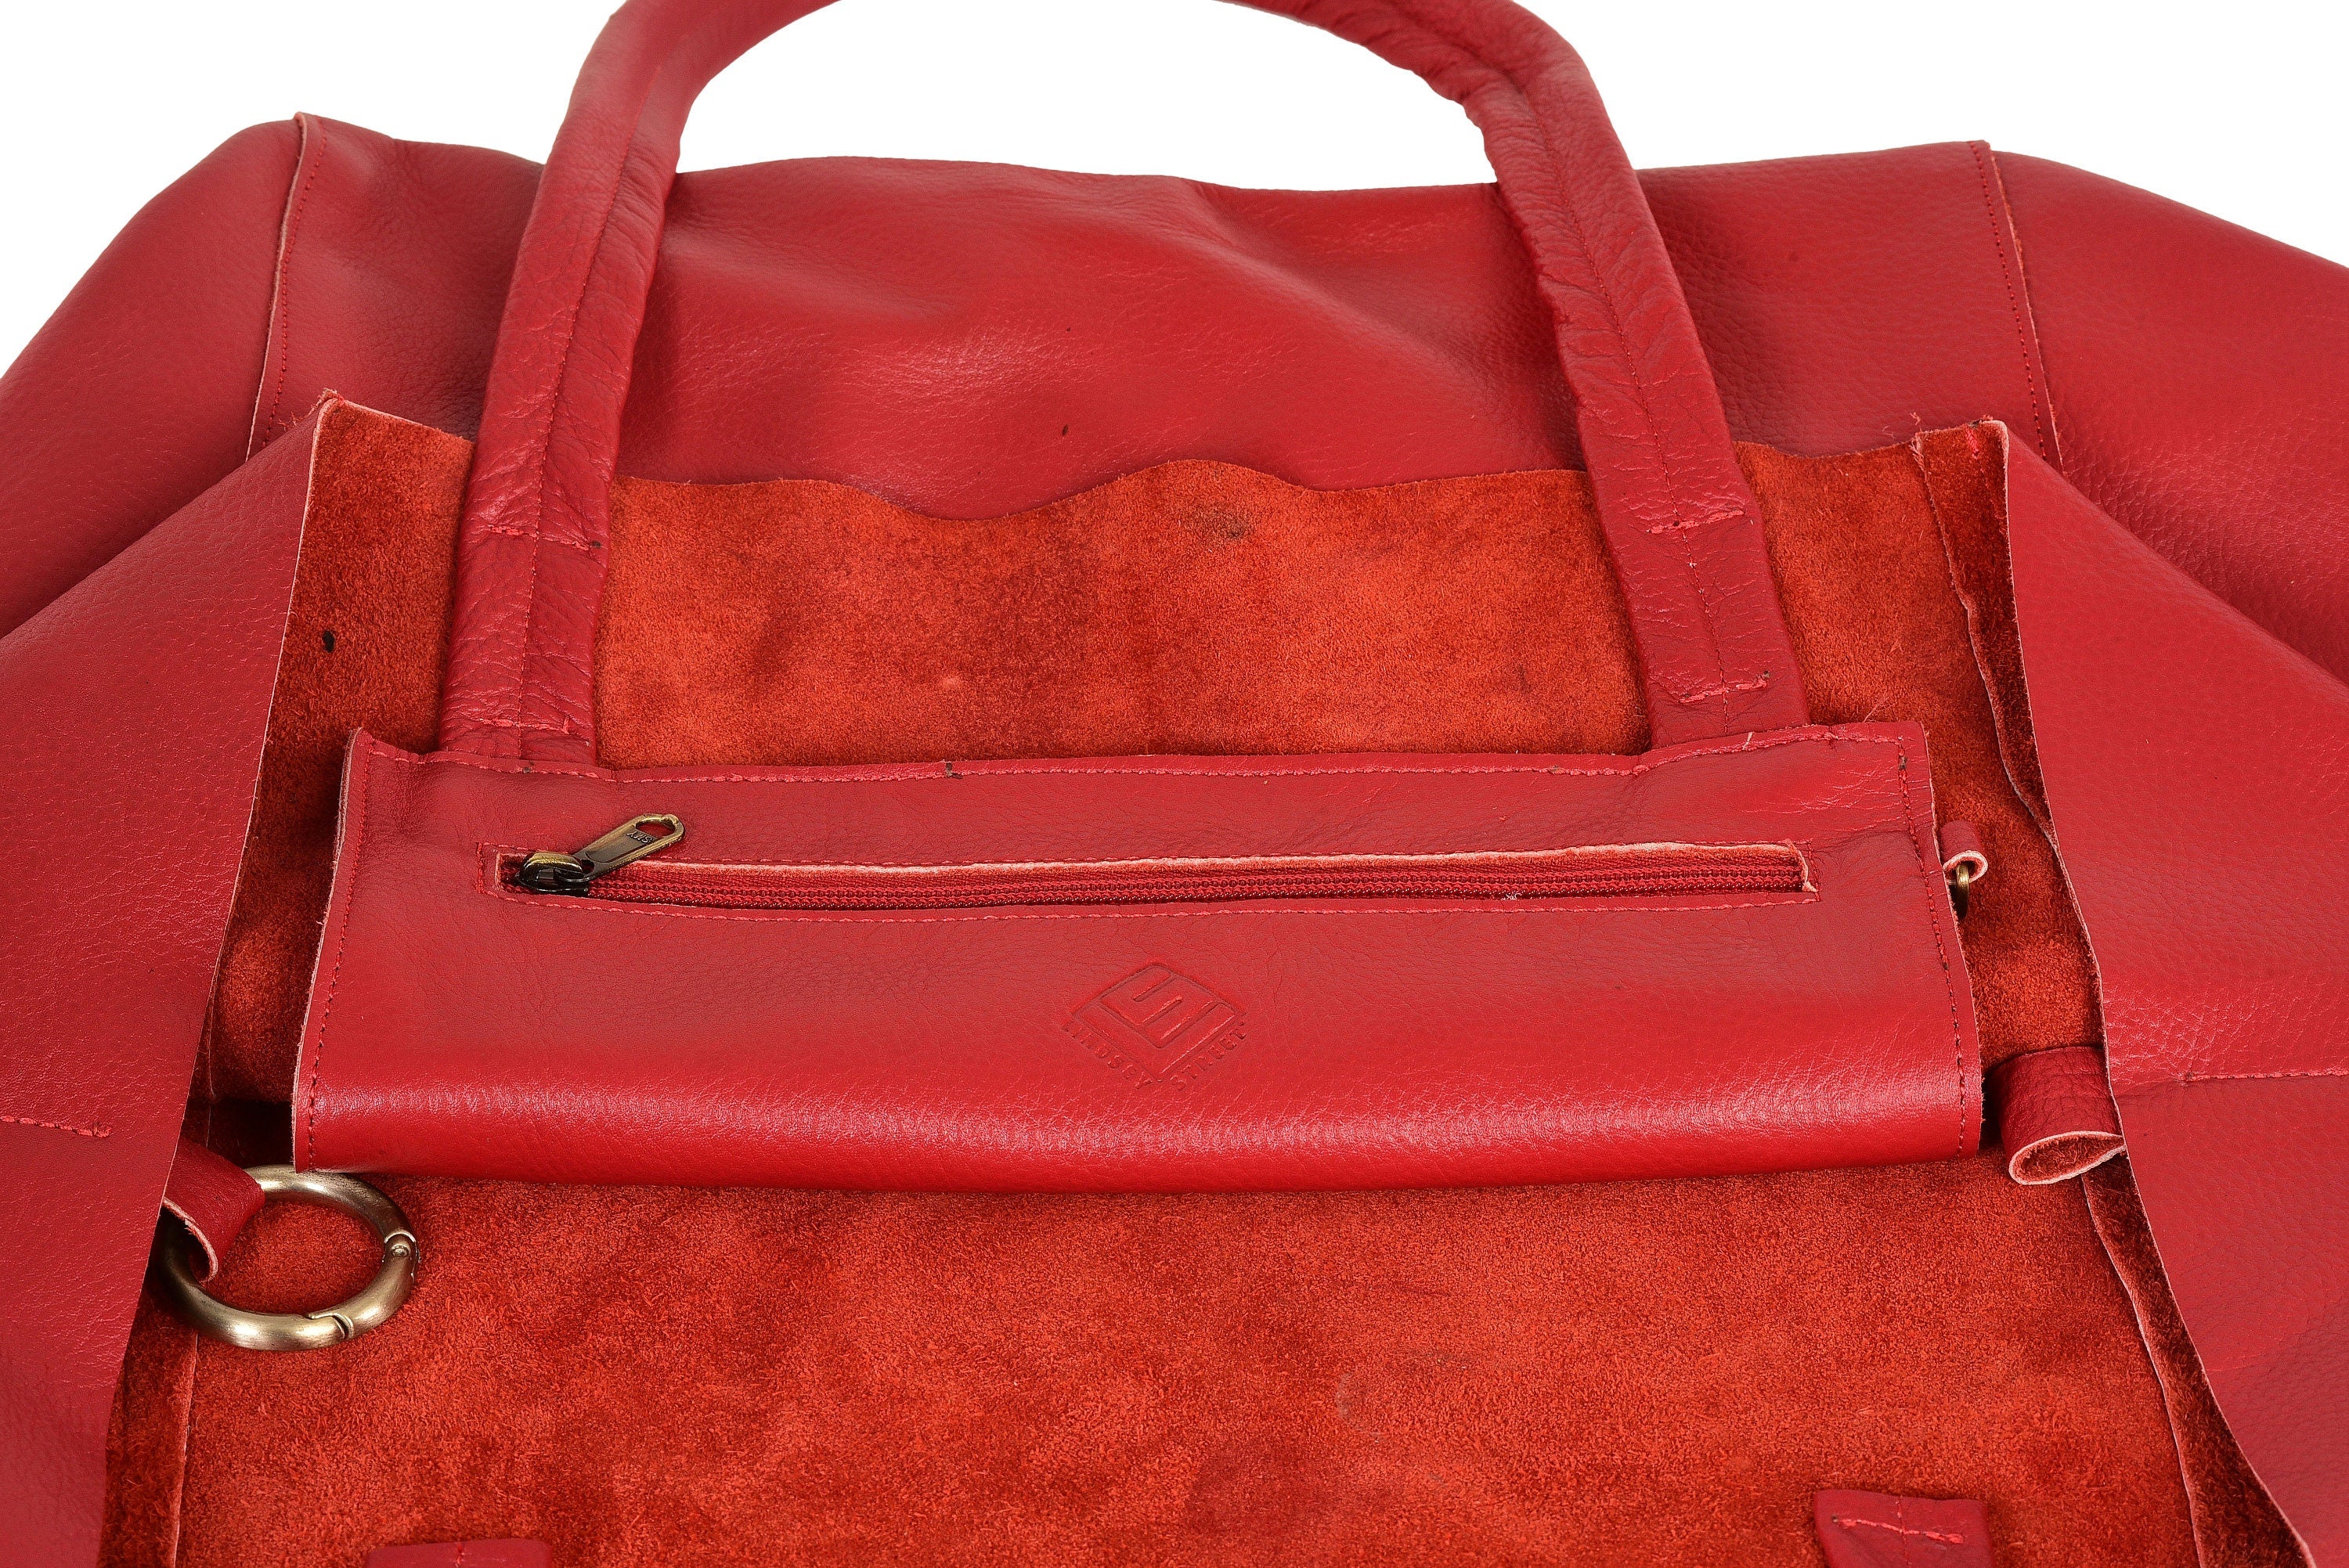 Buy KASTBHANAN Women Red Handbag Red Online @ Best Price in India |  Flipkart.com